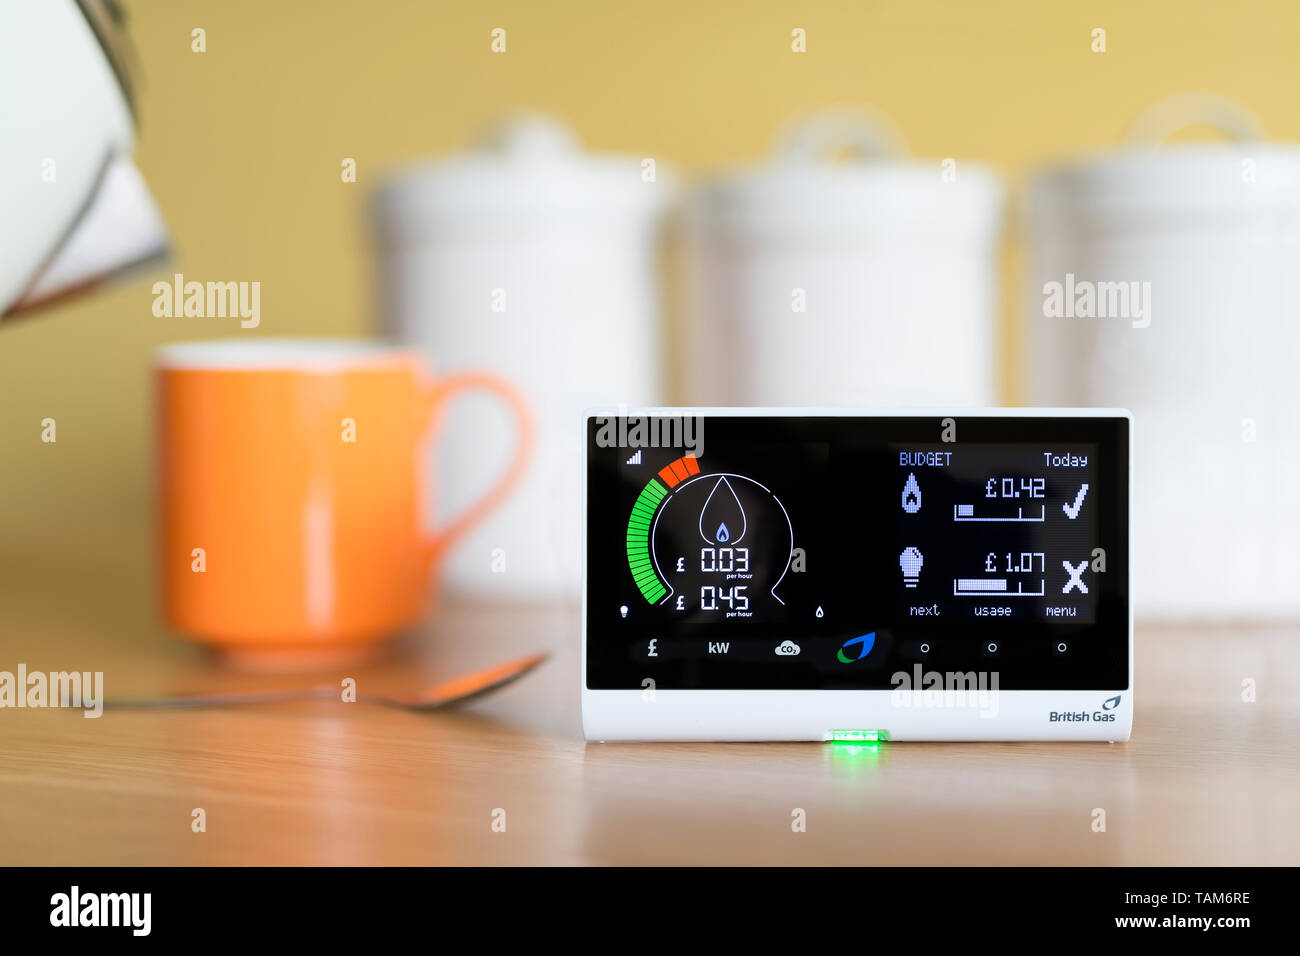 Eine inländische Verwendung British Gas Energy Smart Meter Anzeige der Kosten für Gas, Strom Verbrauch in einer britischen Home, in einer Küche Umgebung gestellt werden. Stockfoto